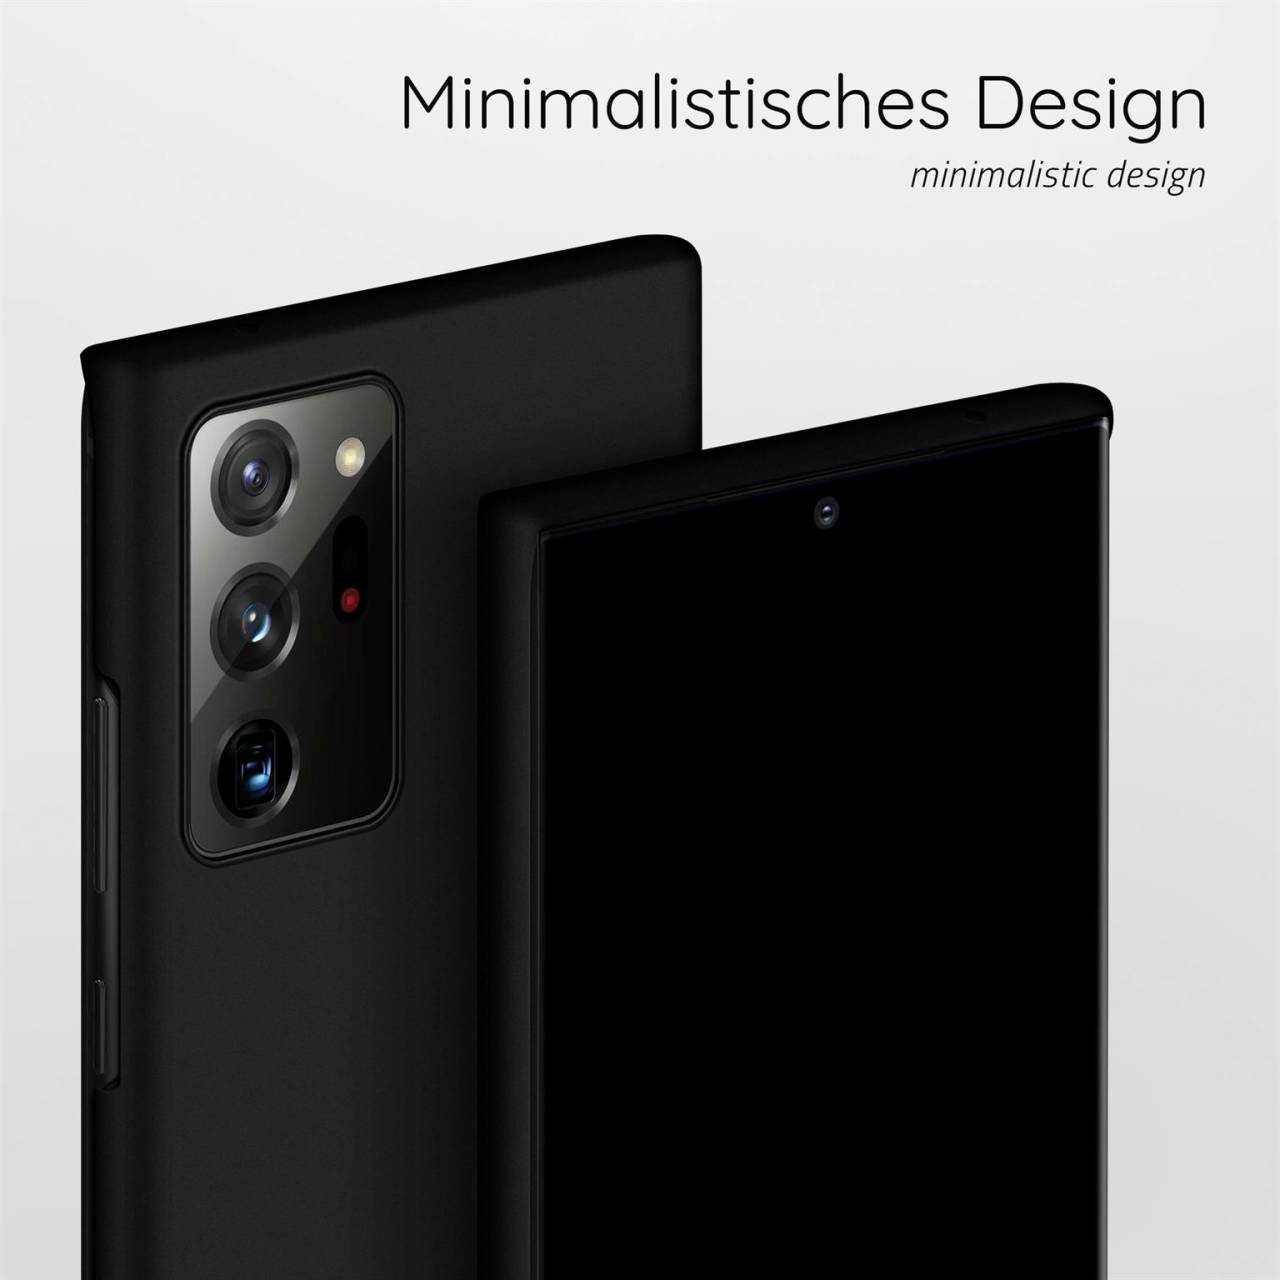 moex Alpha Case für Samsung Galaxy Note 20 Ultra 5G – Extrem dünne, minimalistische Hülle in seidenmatt